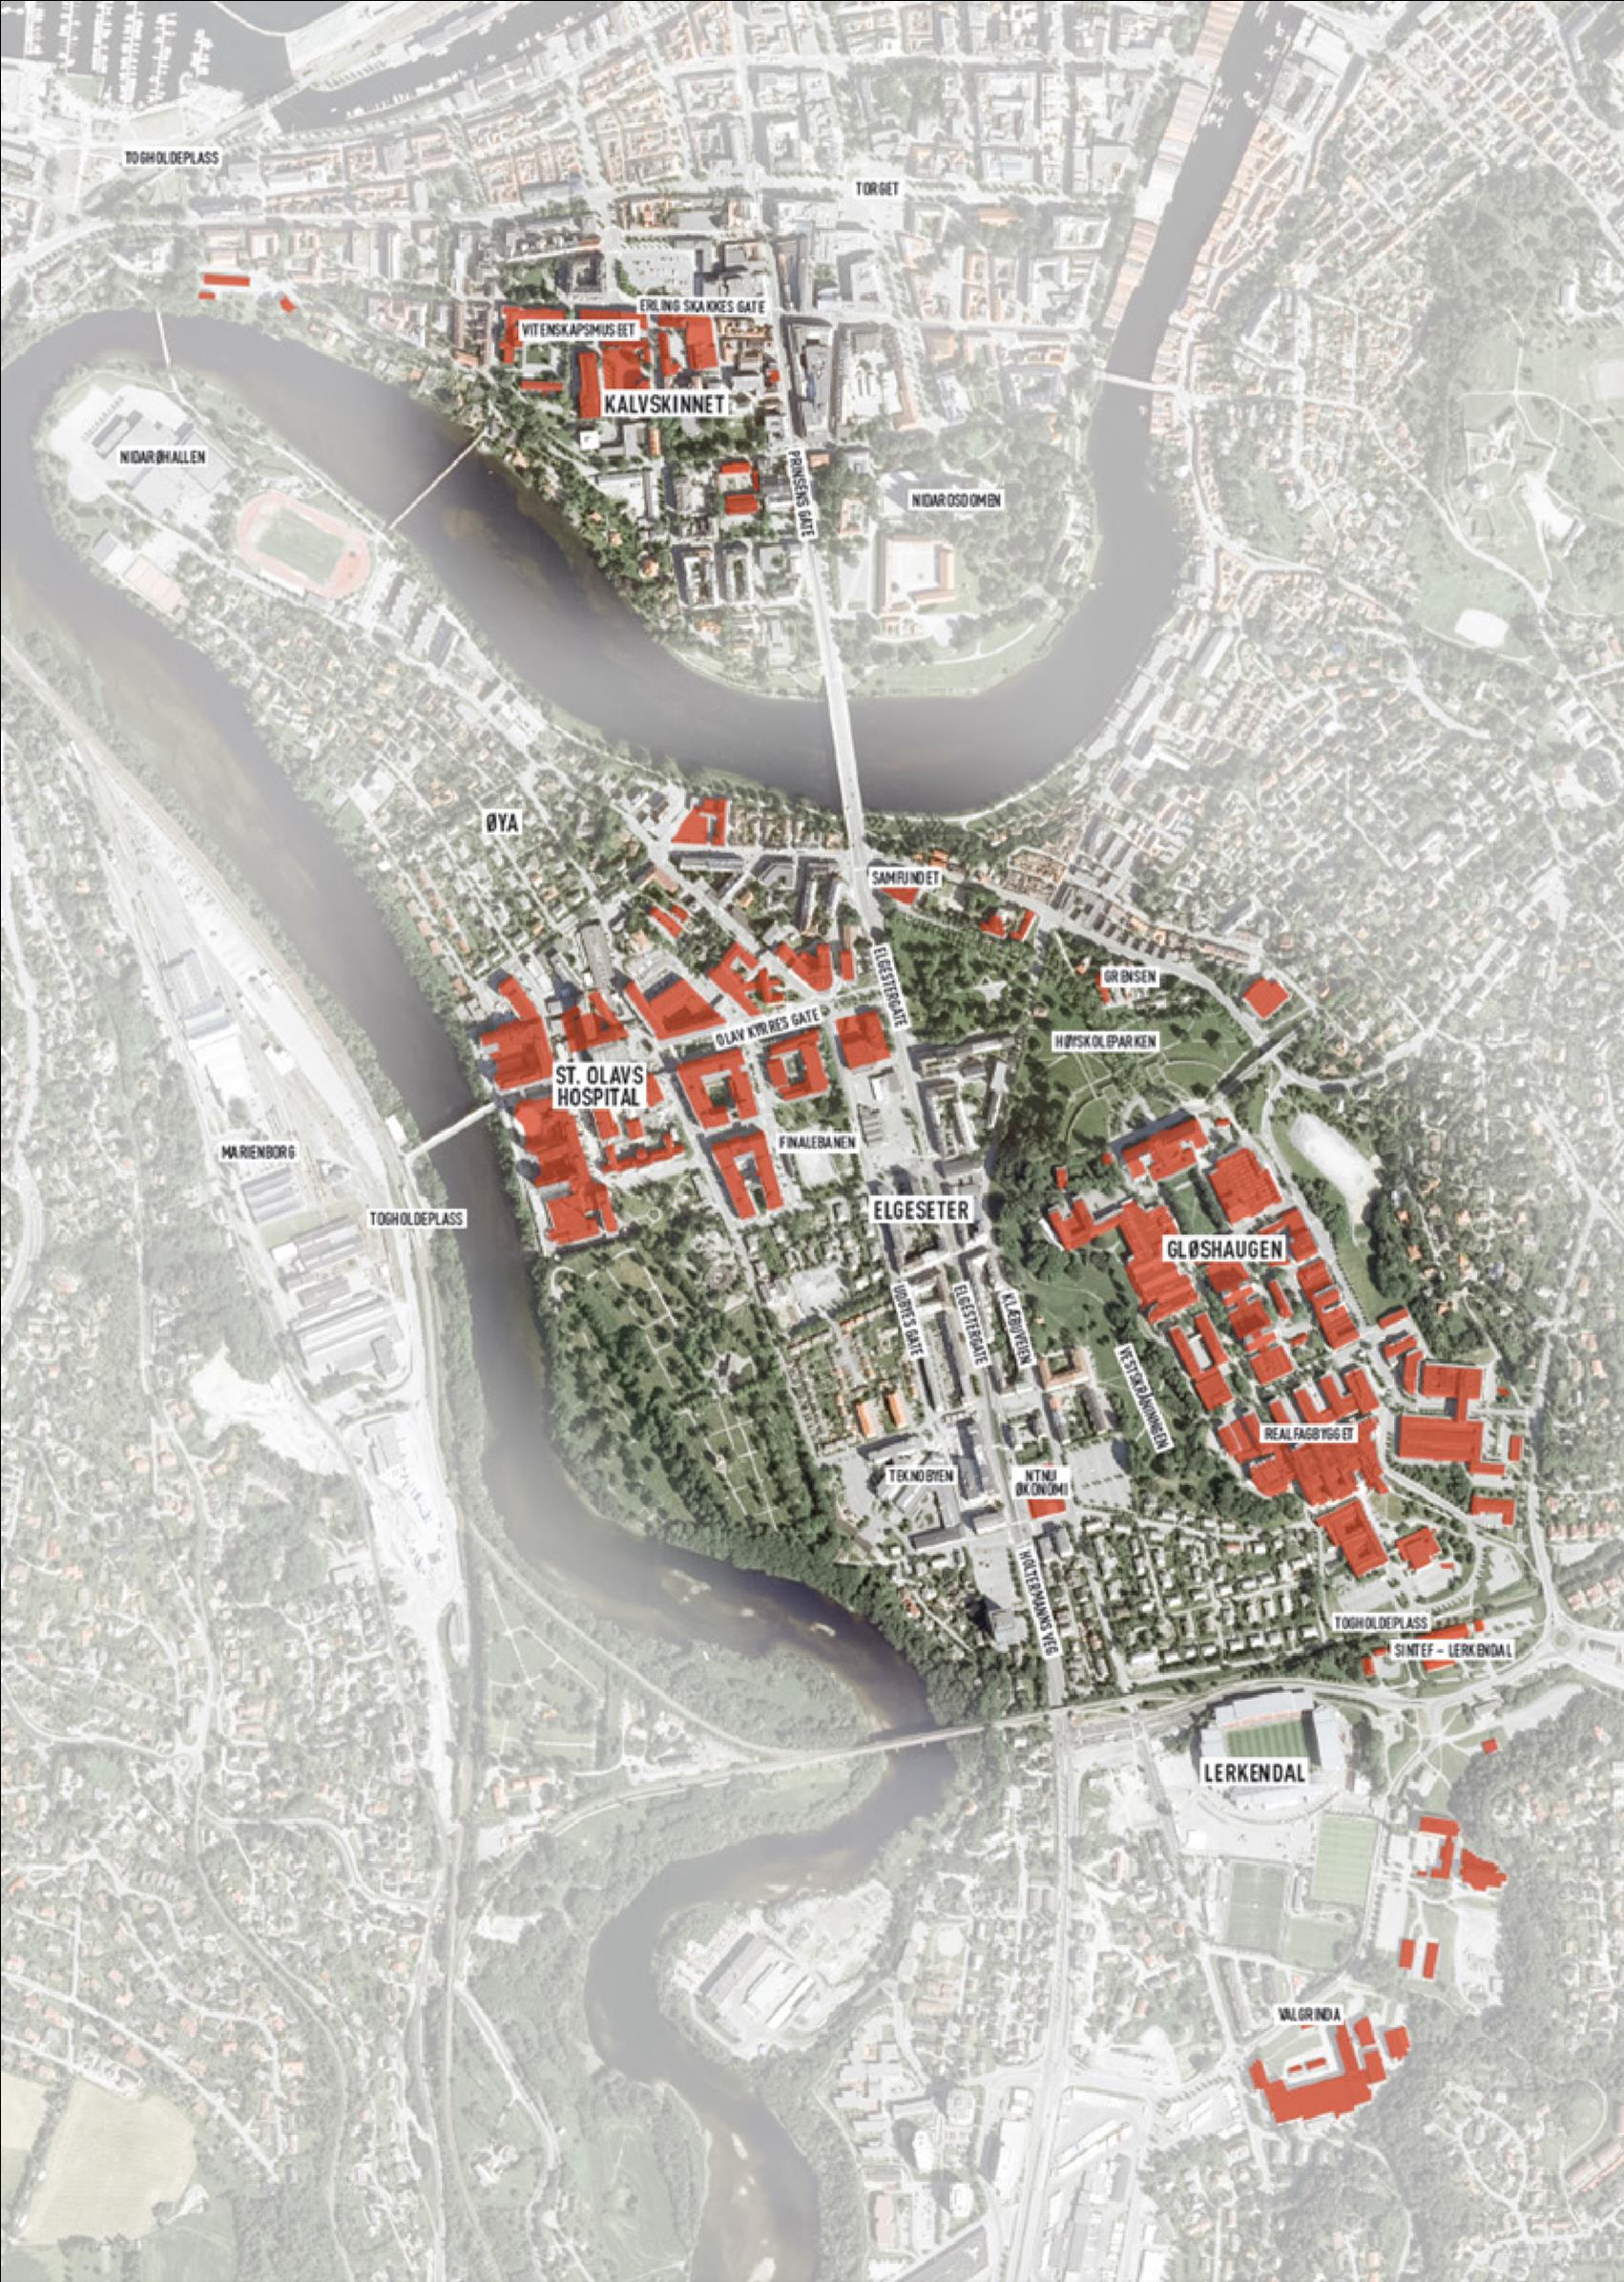 Eiendommen og overordnet lokalisering av samlet campus er illustrert nedenfor. Figur 1.